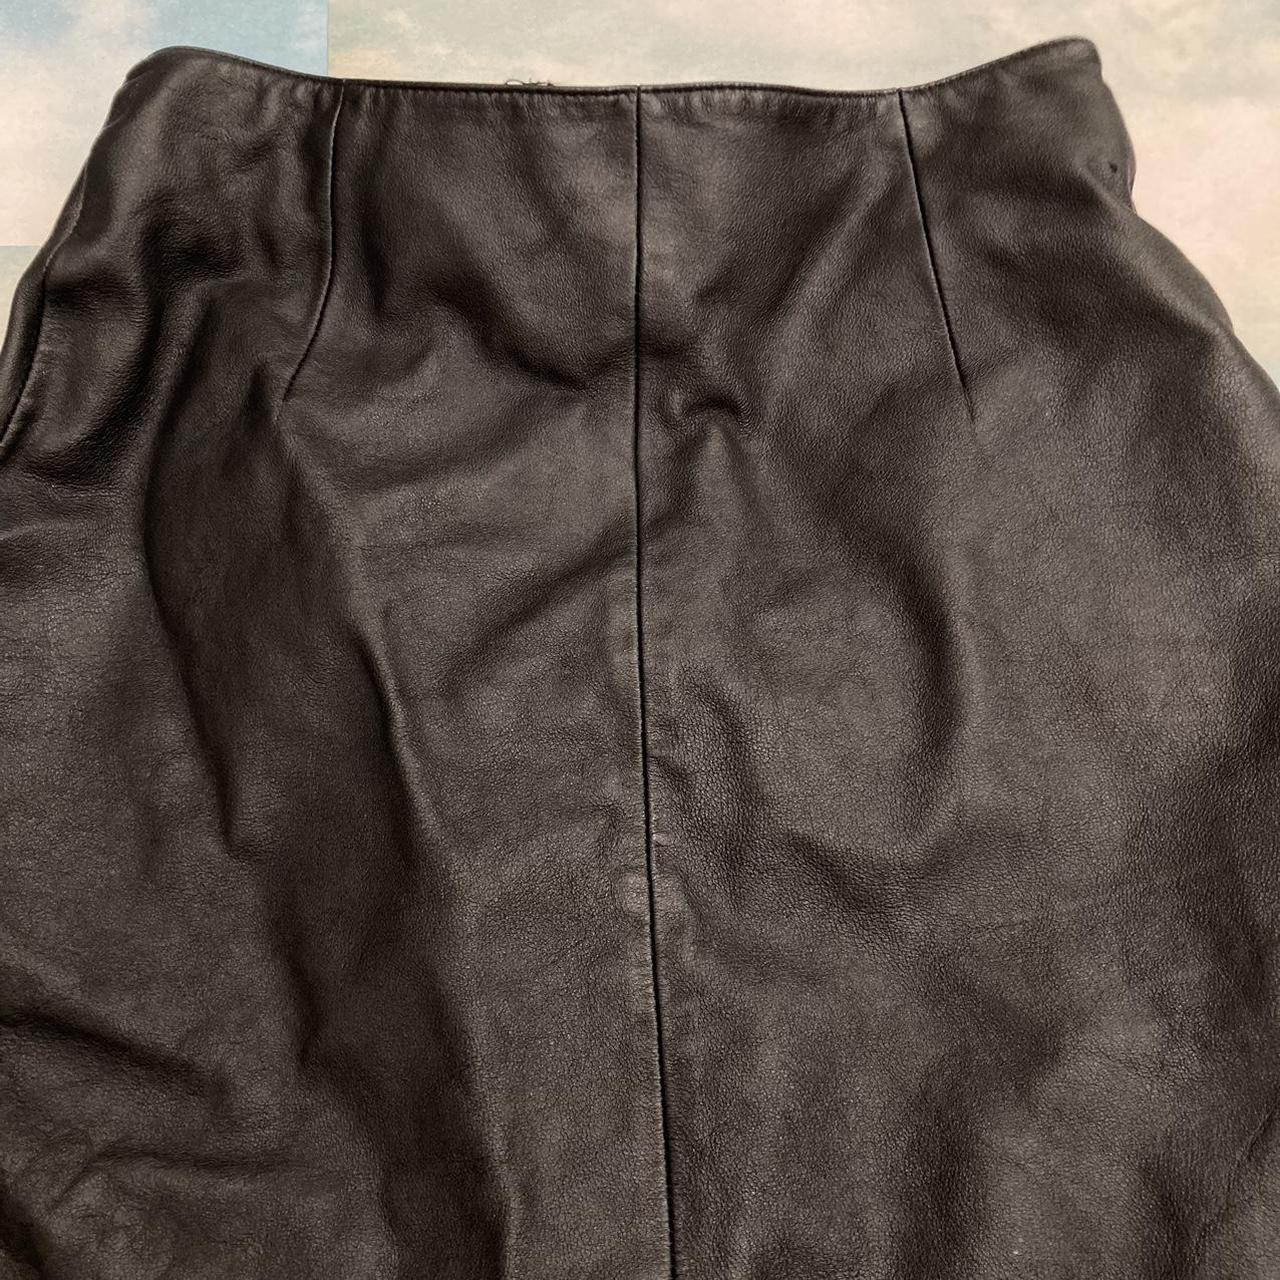 Vintage Black Leather Skirt 🌸Marked size 2,... - Depop